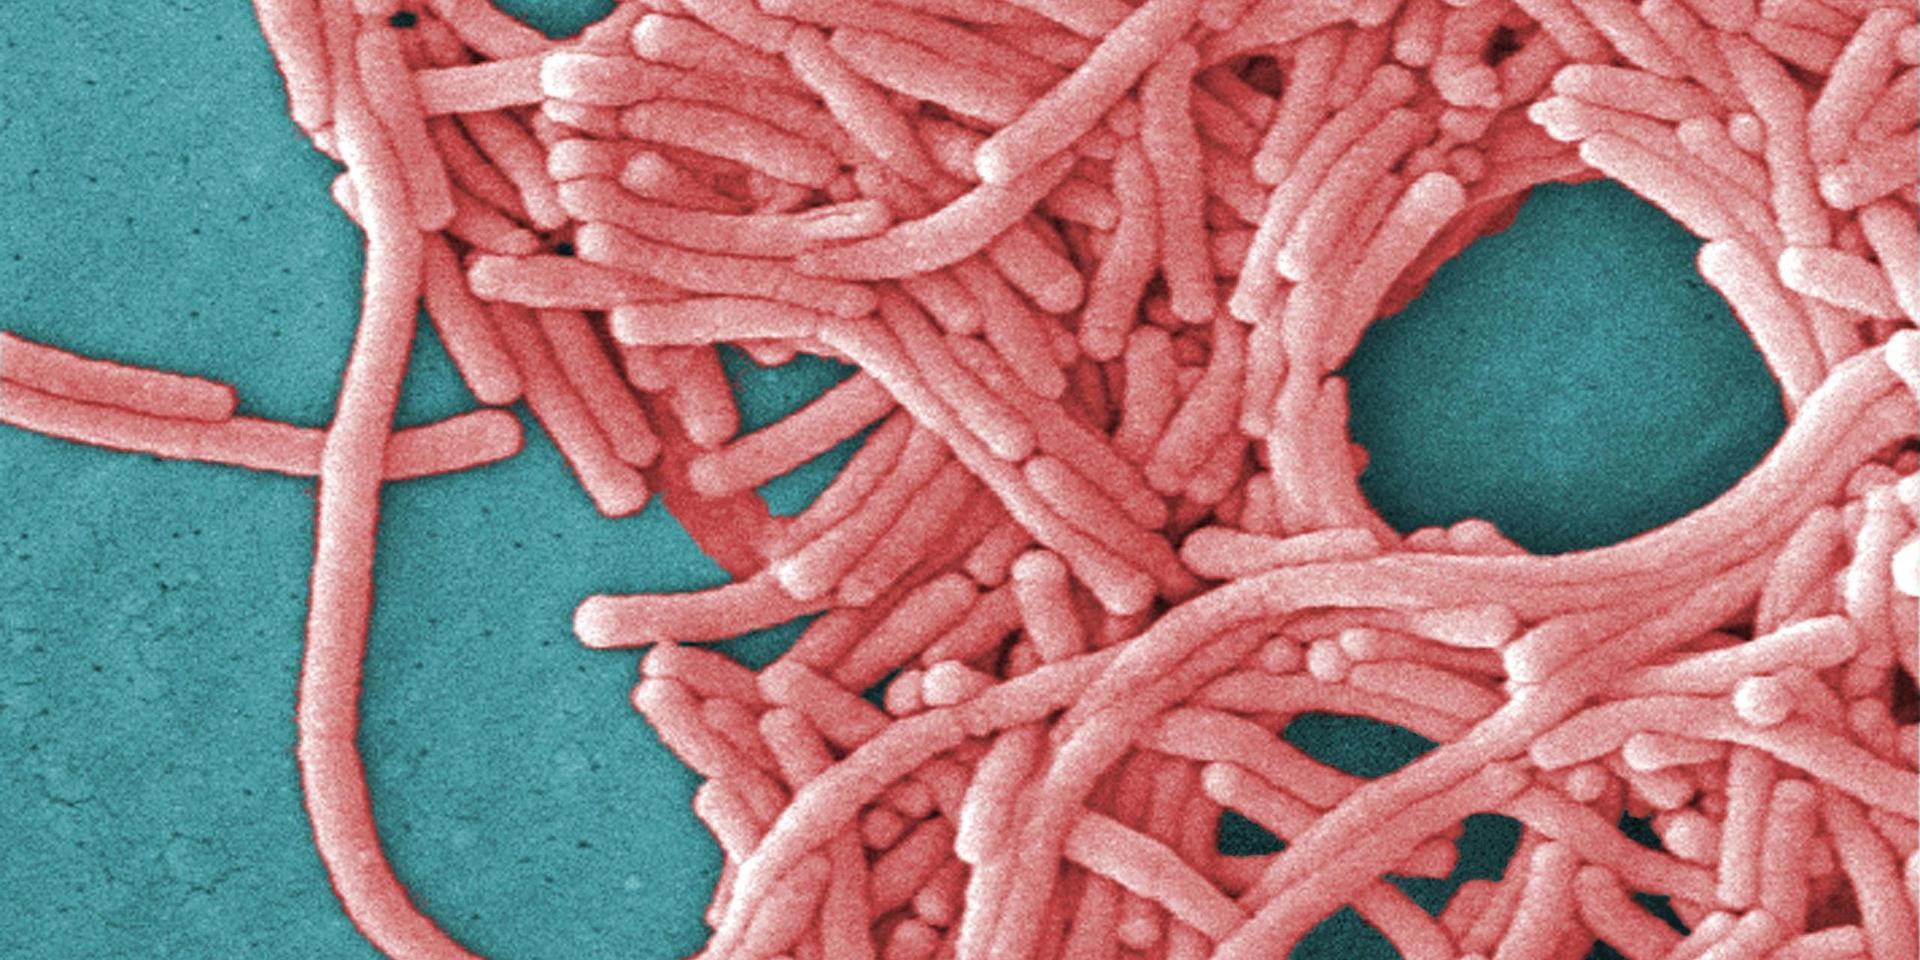 Legionellabakterier sedda genom att mikroskop. Arkivbild.